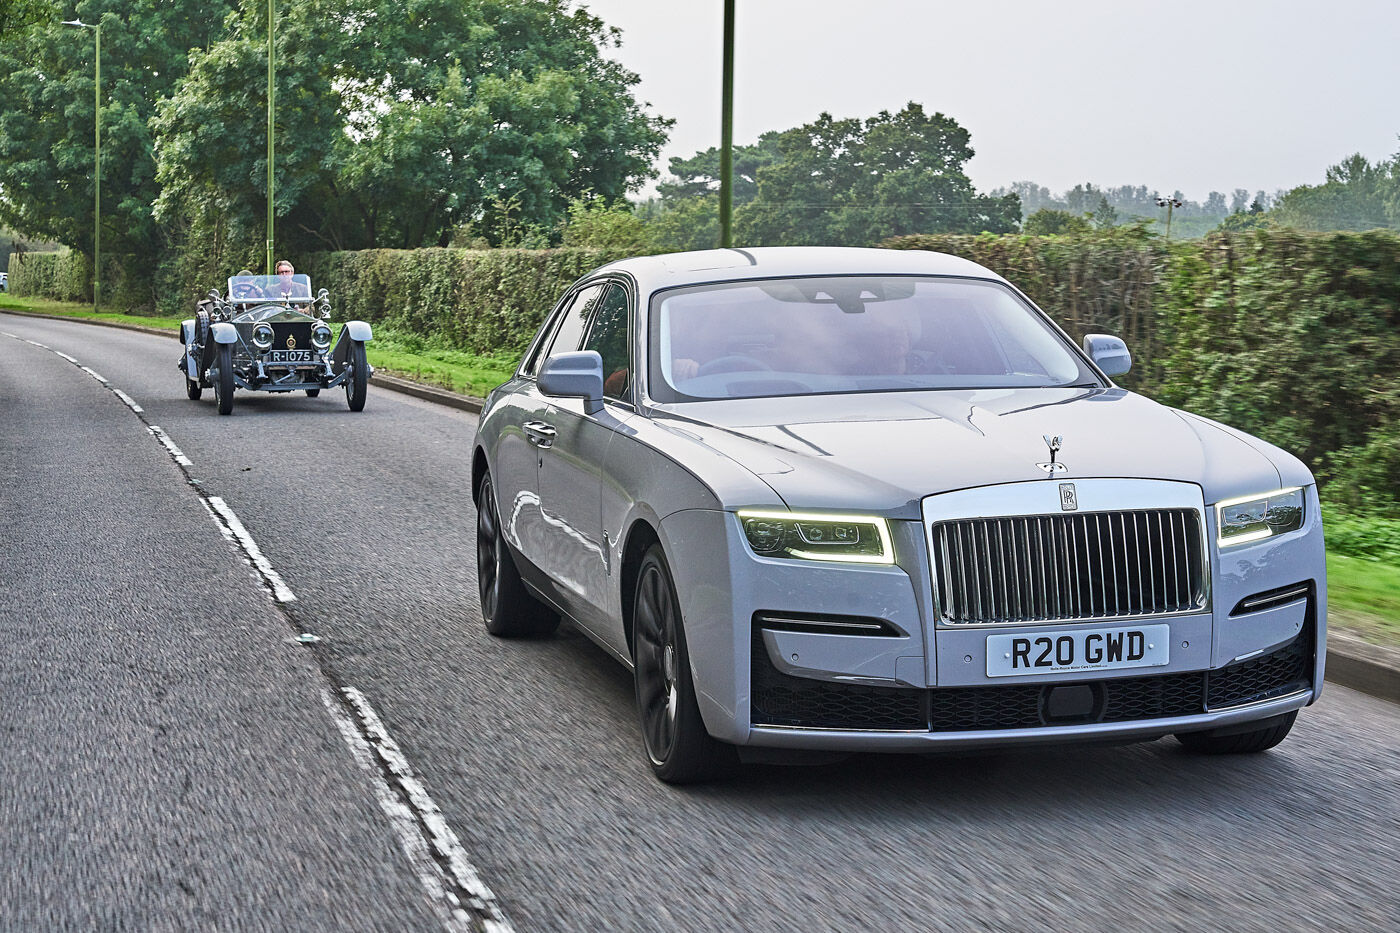 Hành trình chinh phục 660 km từ London đến Edinburgh của Rolls-Royce Silver Ghost 110 năm tuổi-8